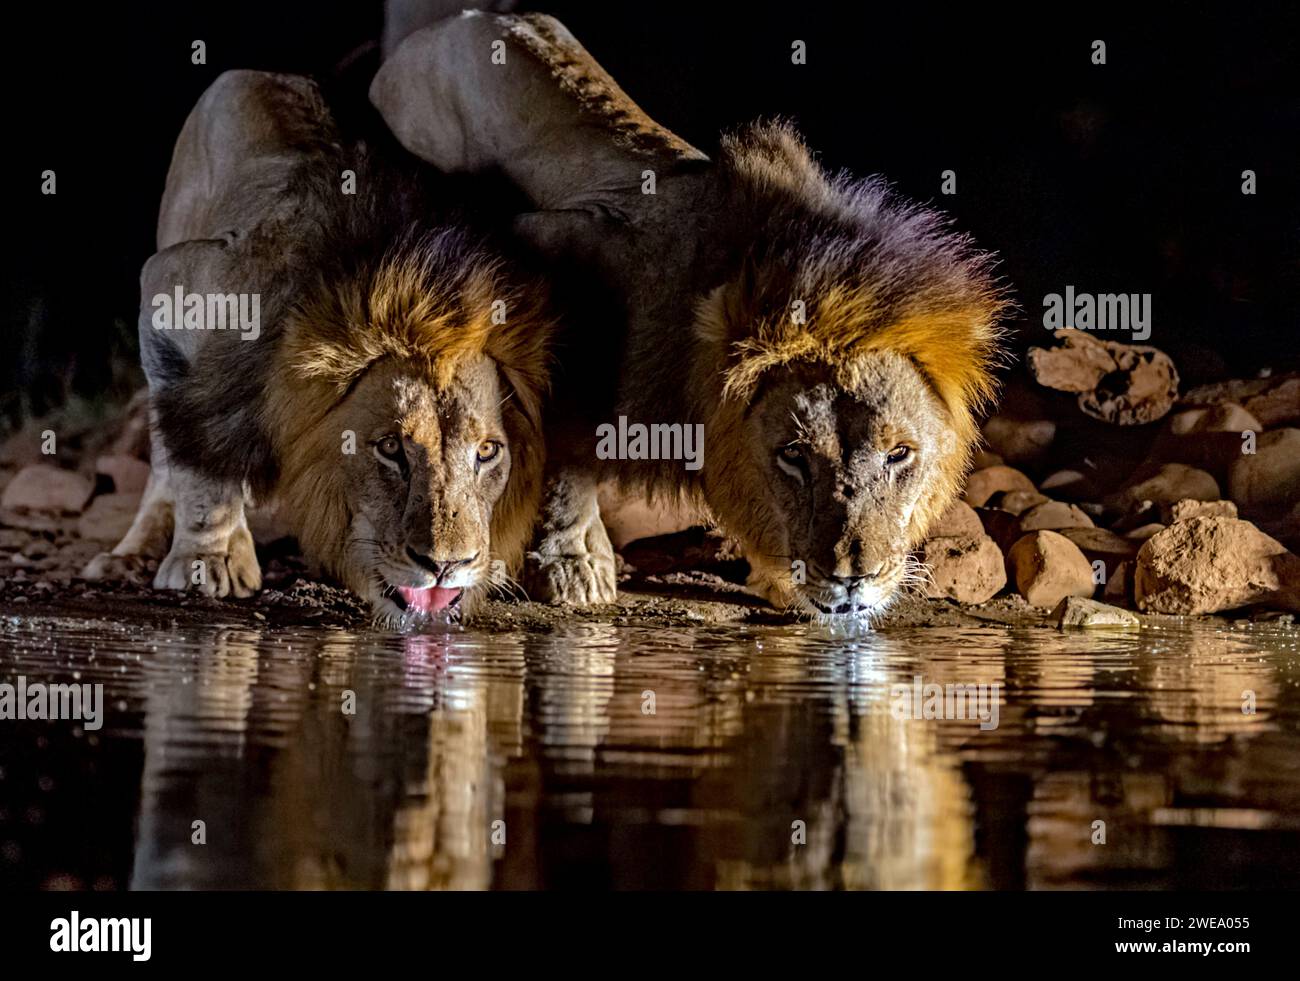 Zwei männliche Löwen trinken nachts Wasser am Wasserloch, Zimanga, South Africa, Private Game Reserve, Stock Photo